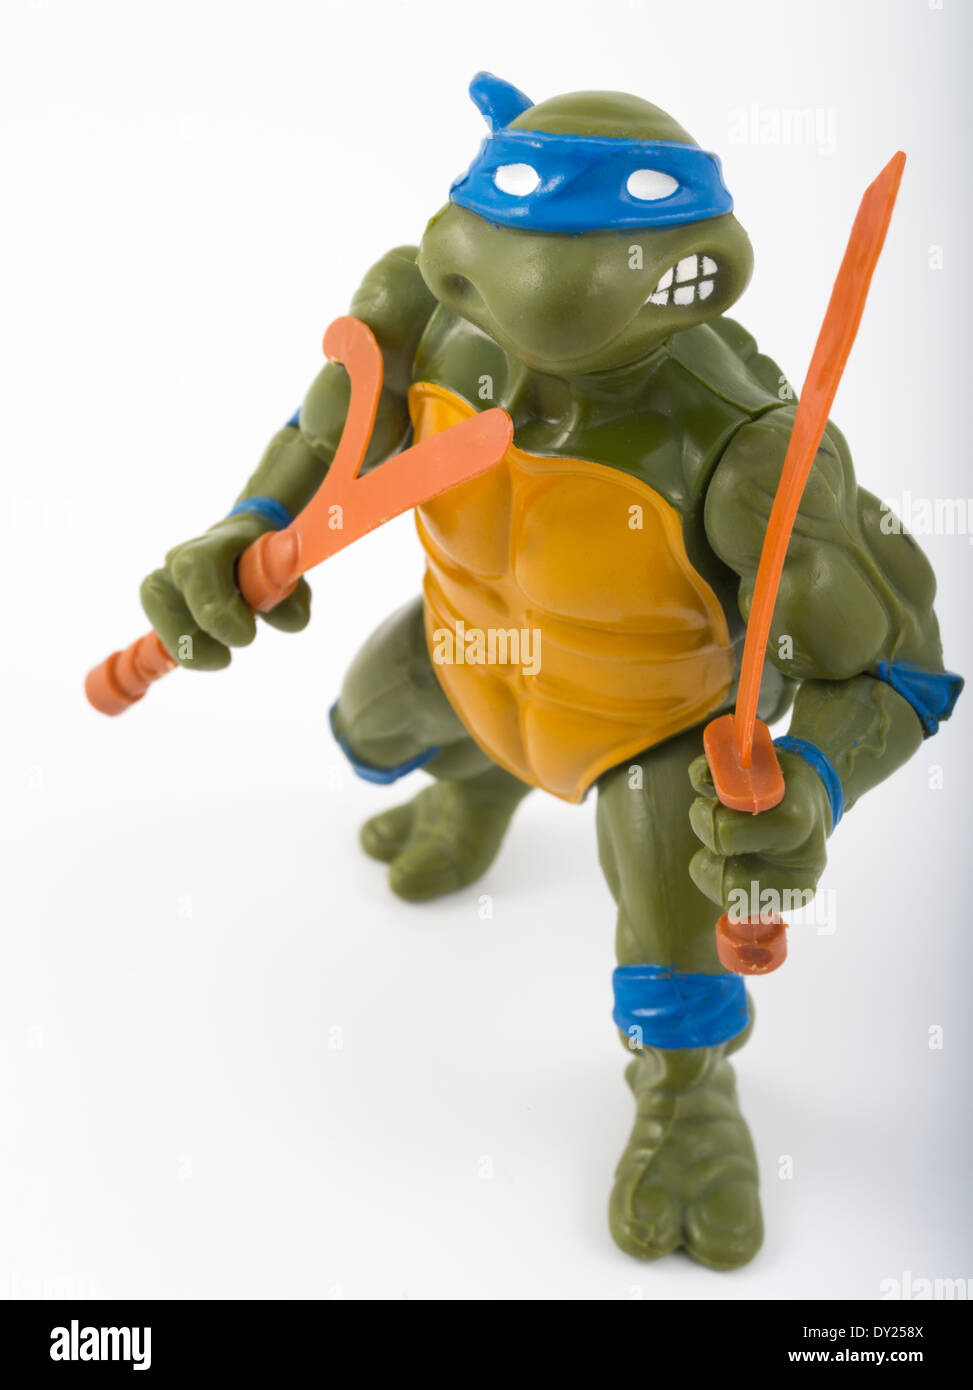 forbrydelse Faial arv Teenage Mutant Ninja Turtles-Aktion Figur 1988 Leonardo von Playmates  Stockfotografie - Alamy